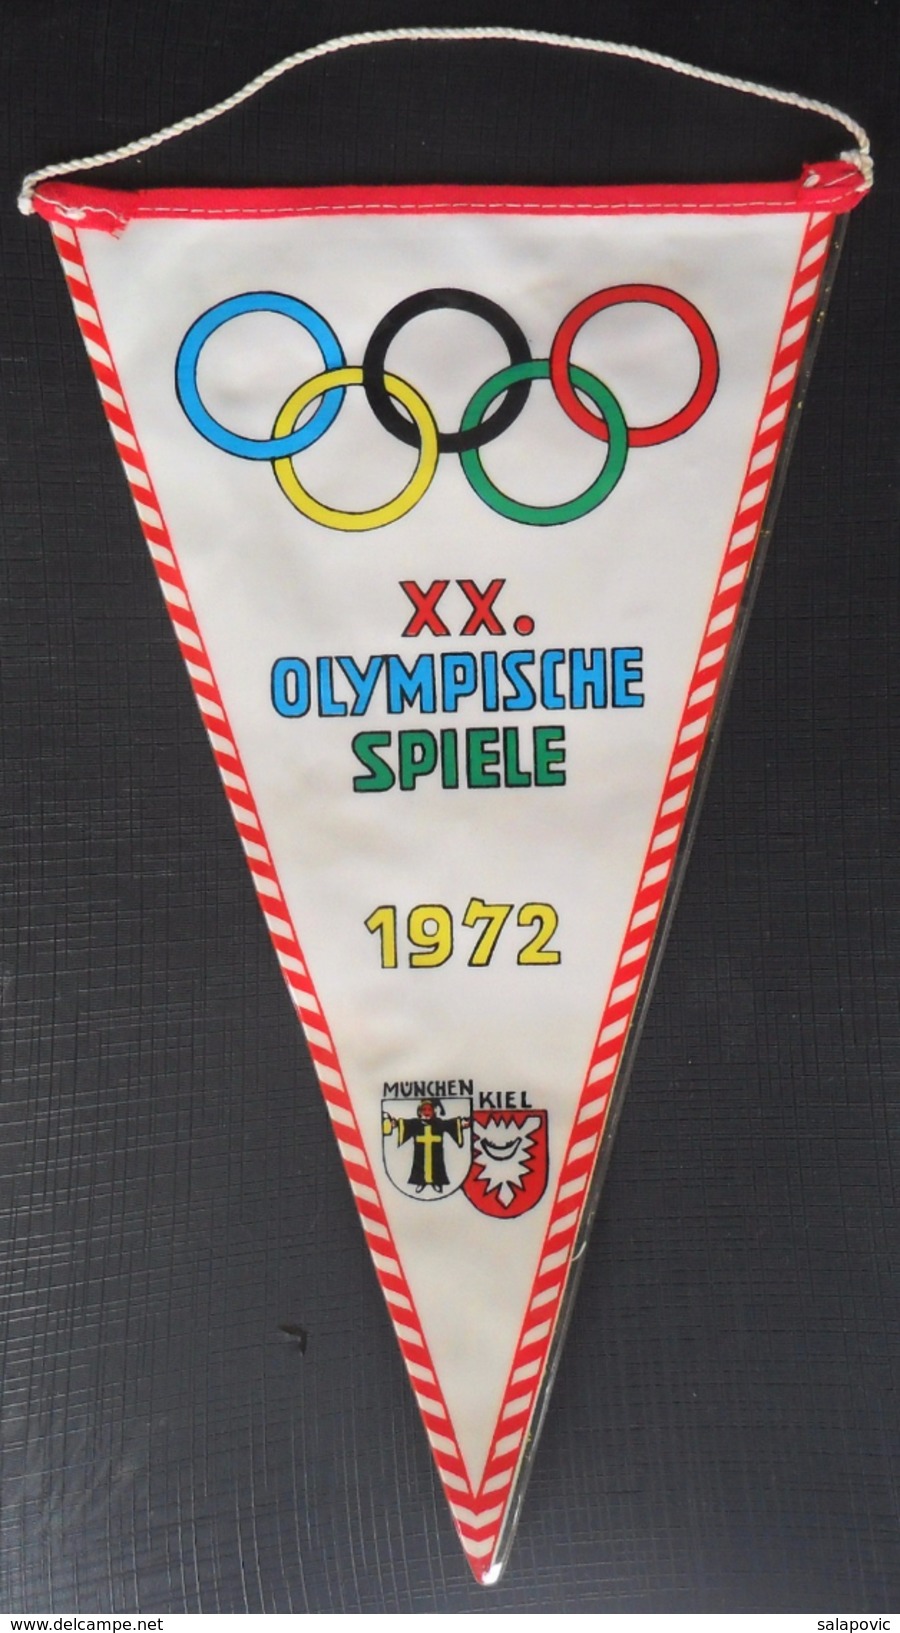 XX. OLYMPISCHE SPIELE 1972 MUNCHEN, XX. OLYMPIC GAMES 1972 MUNICH OLD PENNANT - Uniformes Recordatorios & Misc